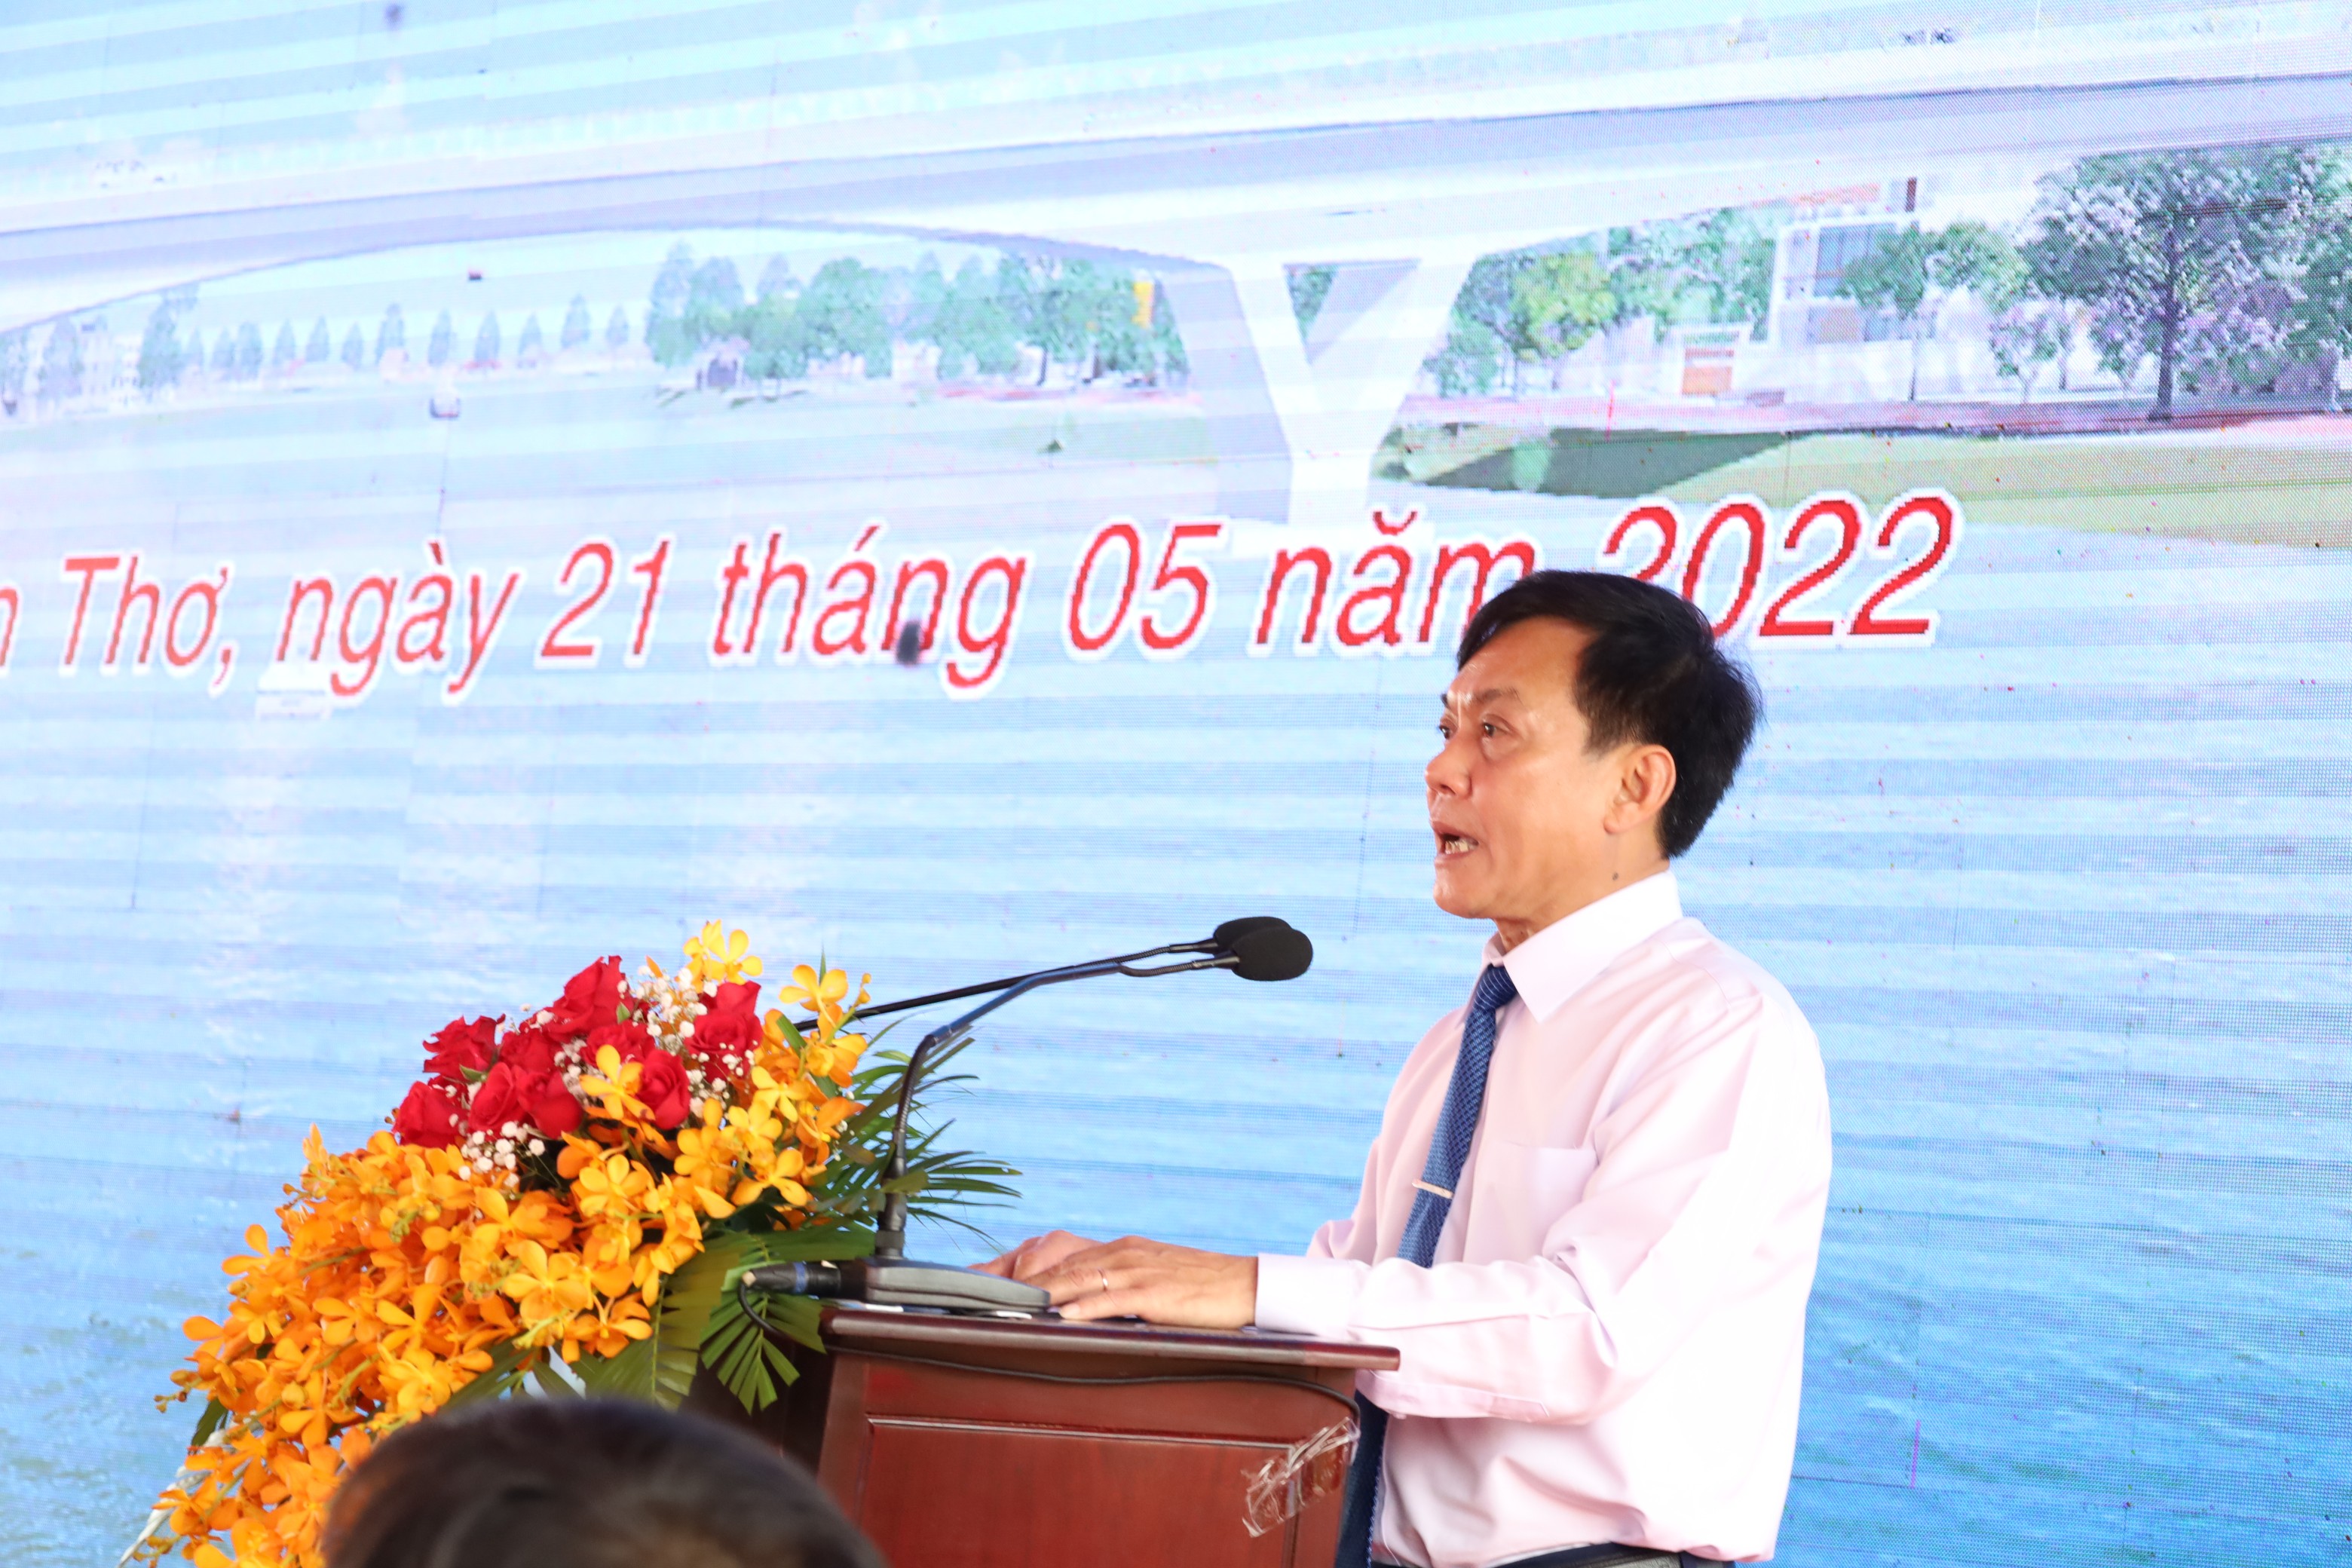 Ông Nguyễn Ngọc Hè - Phó chủ tịch UBND TP. Cần Thơ phát biểu tại buổi lễ.